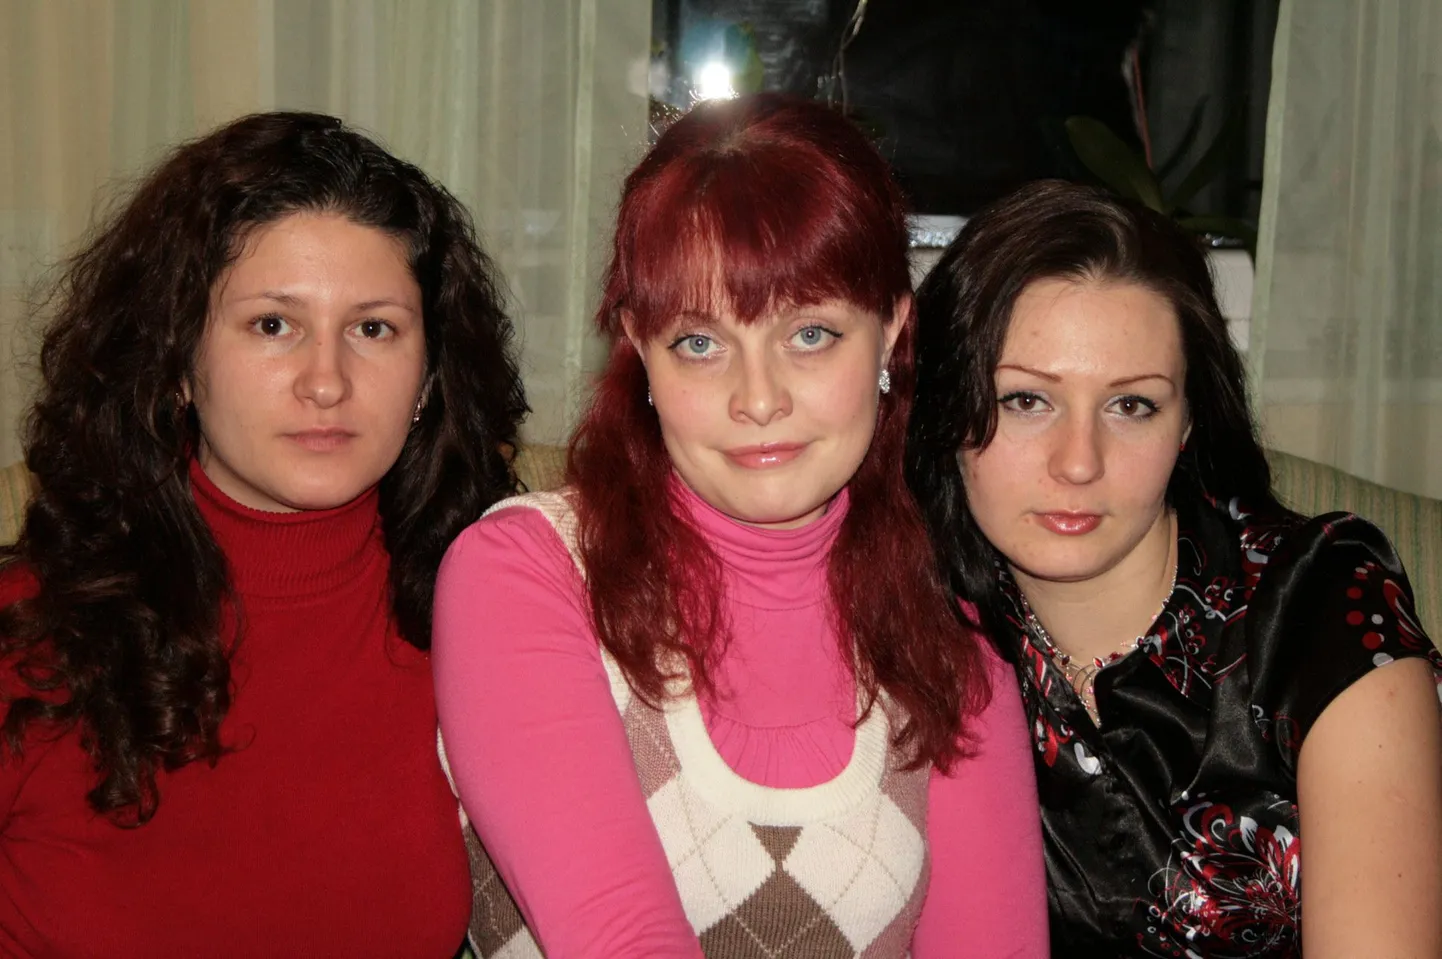 Алеся Папанова.
На фото подружки Женя, Нина и я (Алеся). Фотография сделана на Рождество, которое из года в год уже более 10 лет мы празднуем вместе